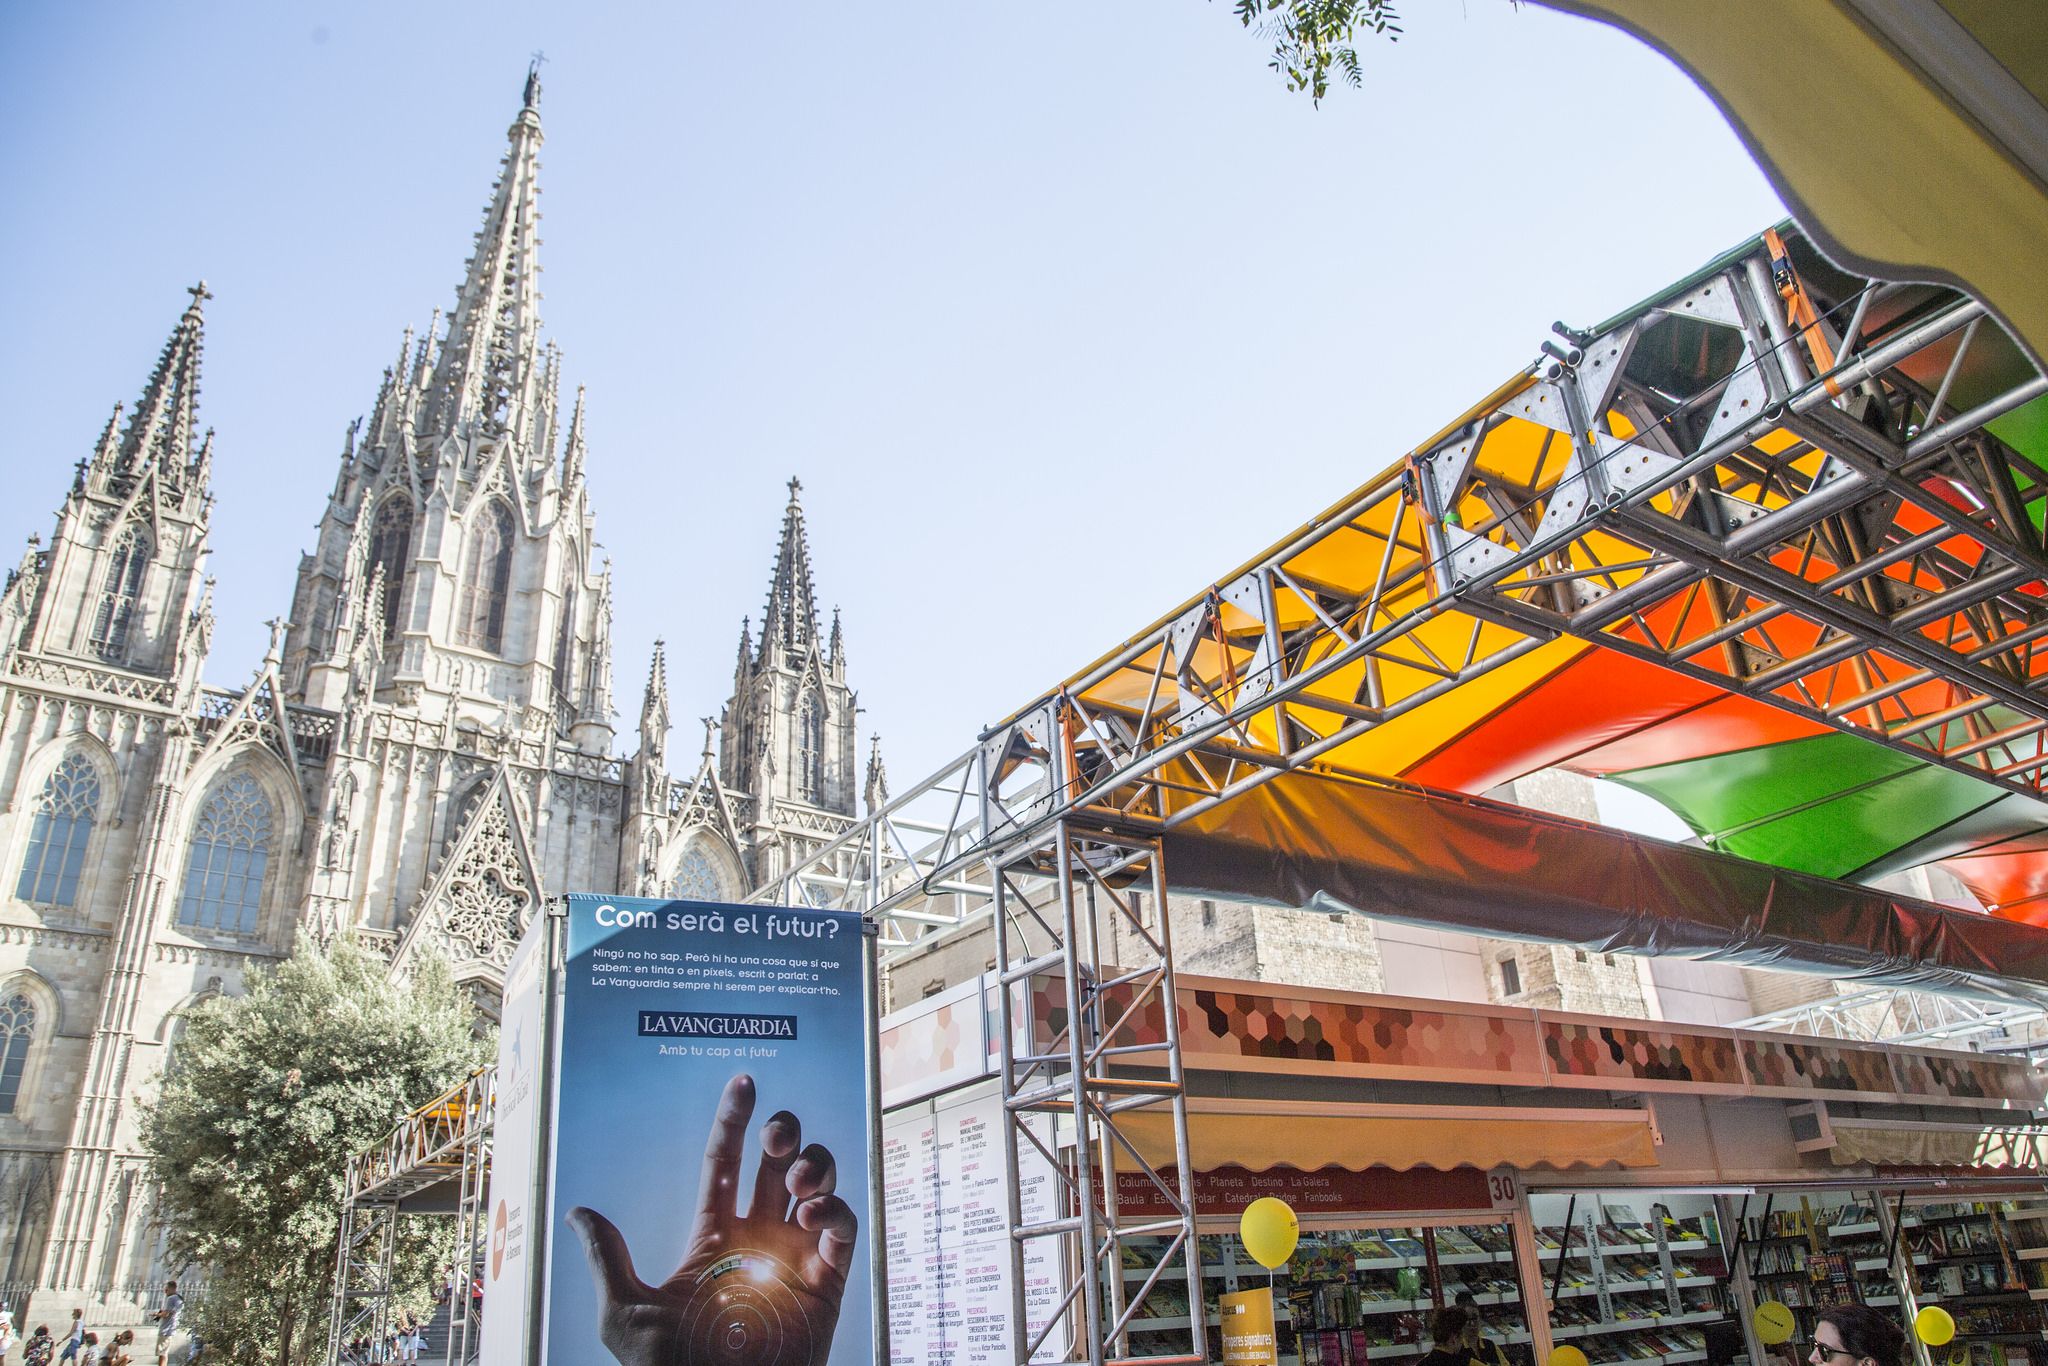 El libro en catalán sale a la calle en busca de lectores